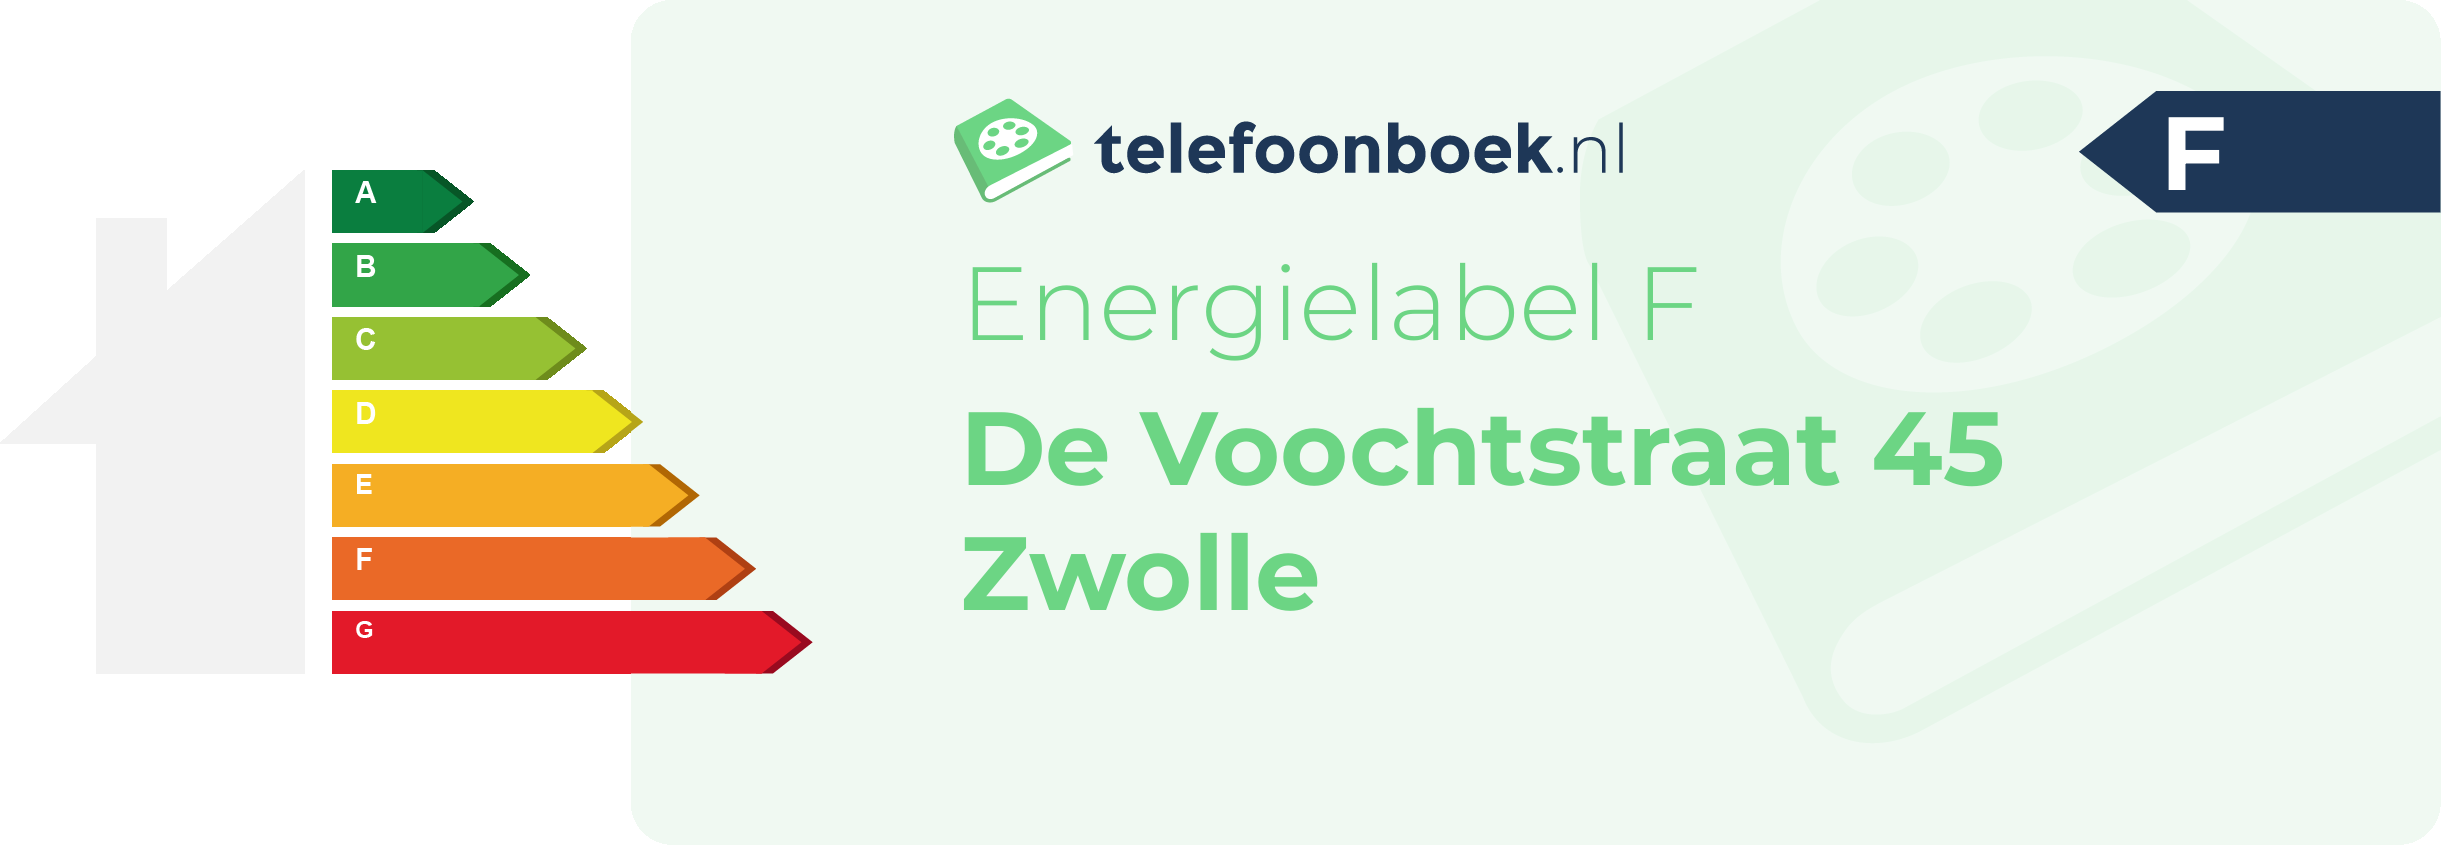 Energielabel De Voochtstraat 45 Zwolle